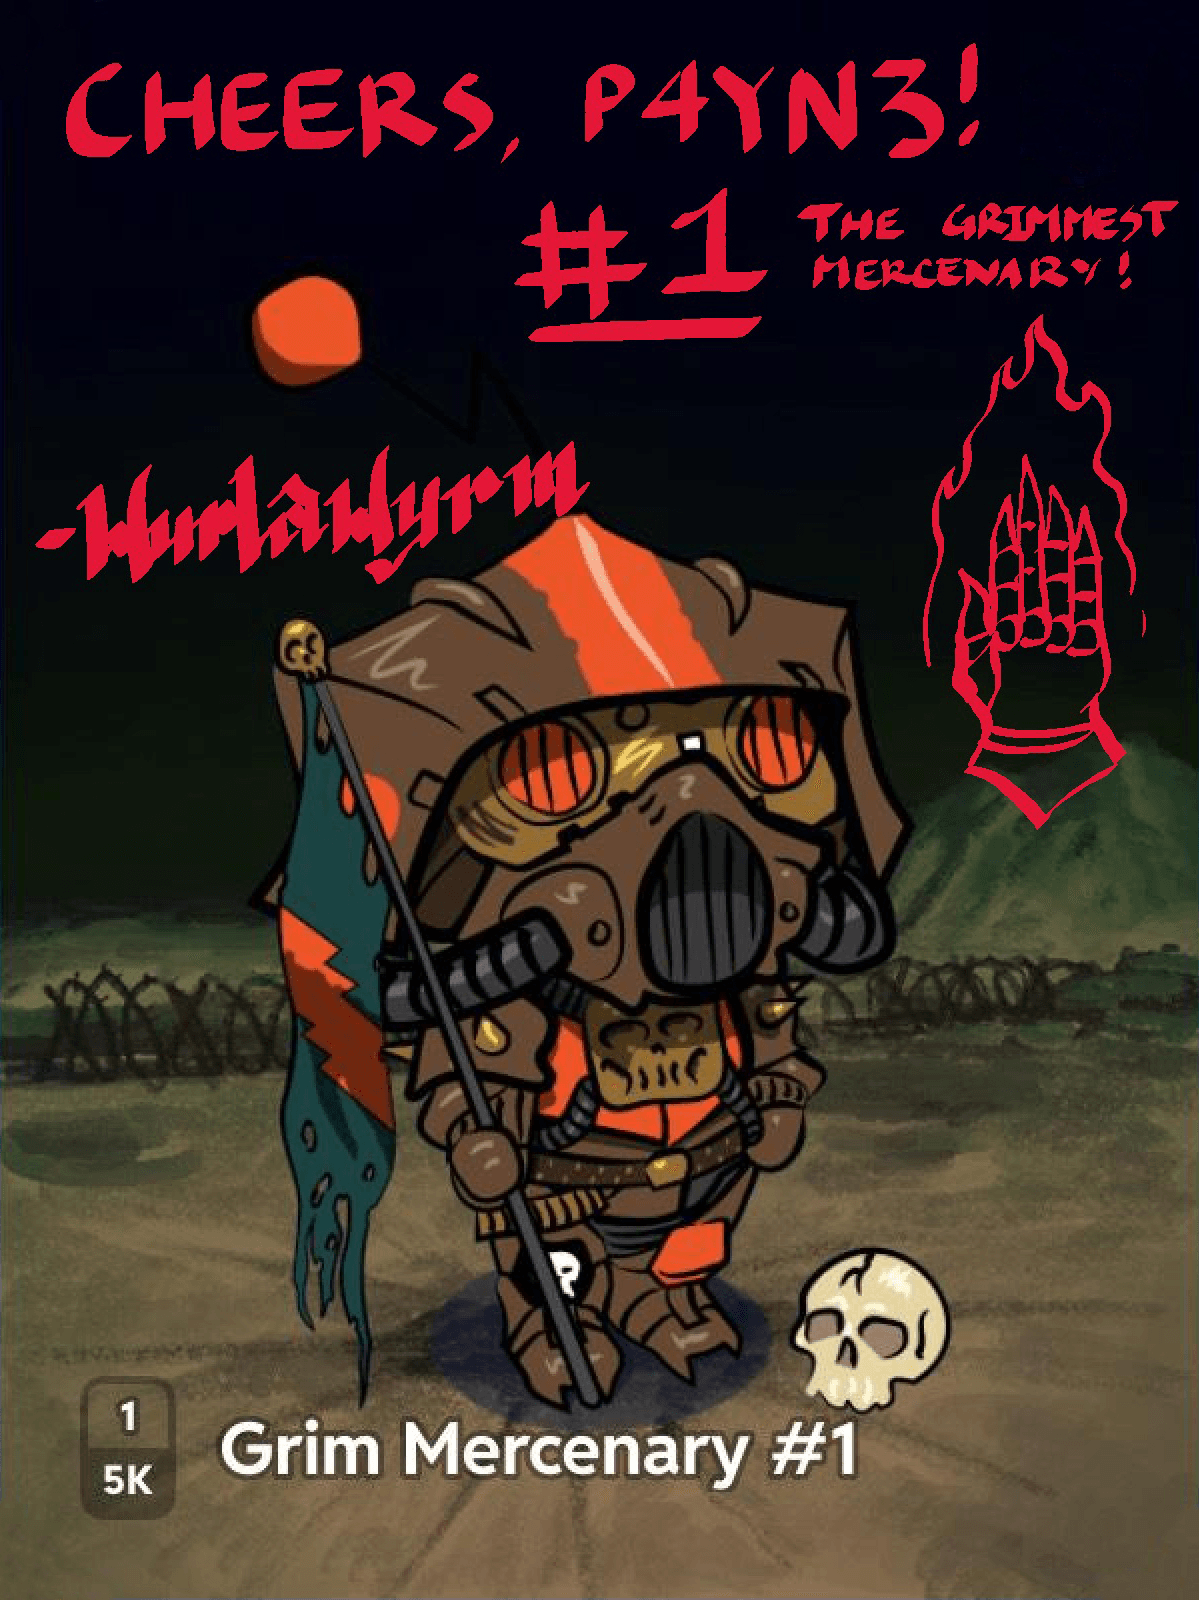 Grim Mercenary #1 [Signed by Wurlawyrm]